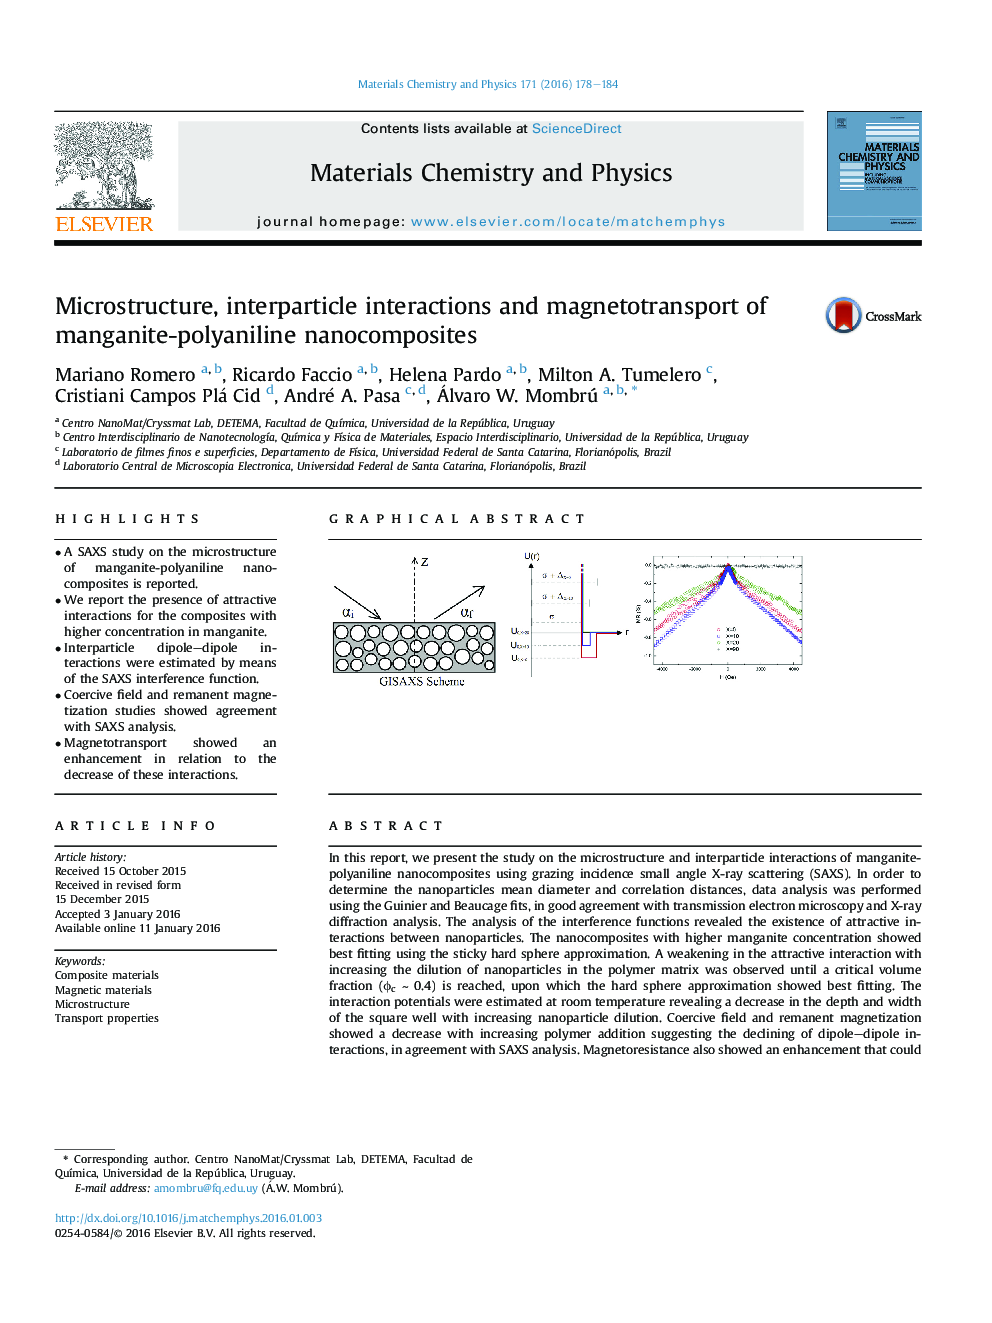 میکروارگانیسم، تعاملات متقاطع و انتقال مغناطیسی نانوکامپوزیتهای منگنیت-پلیانیلین 